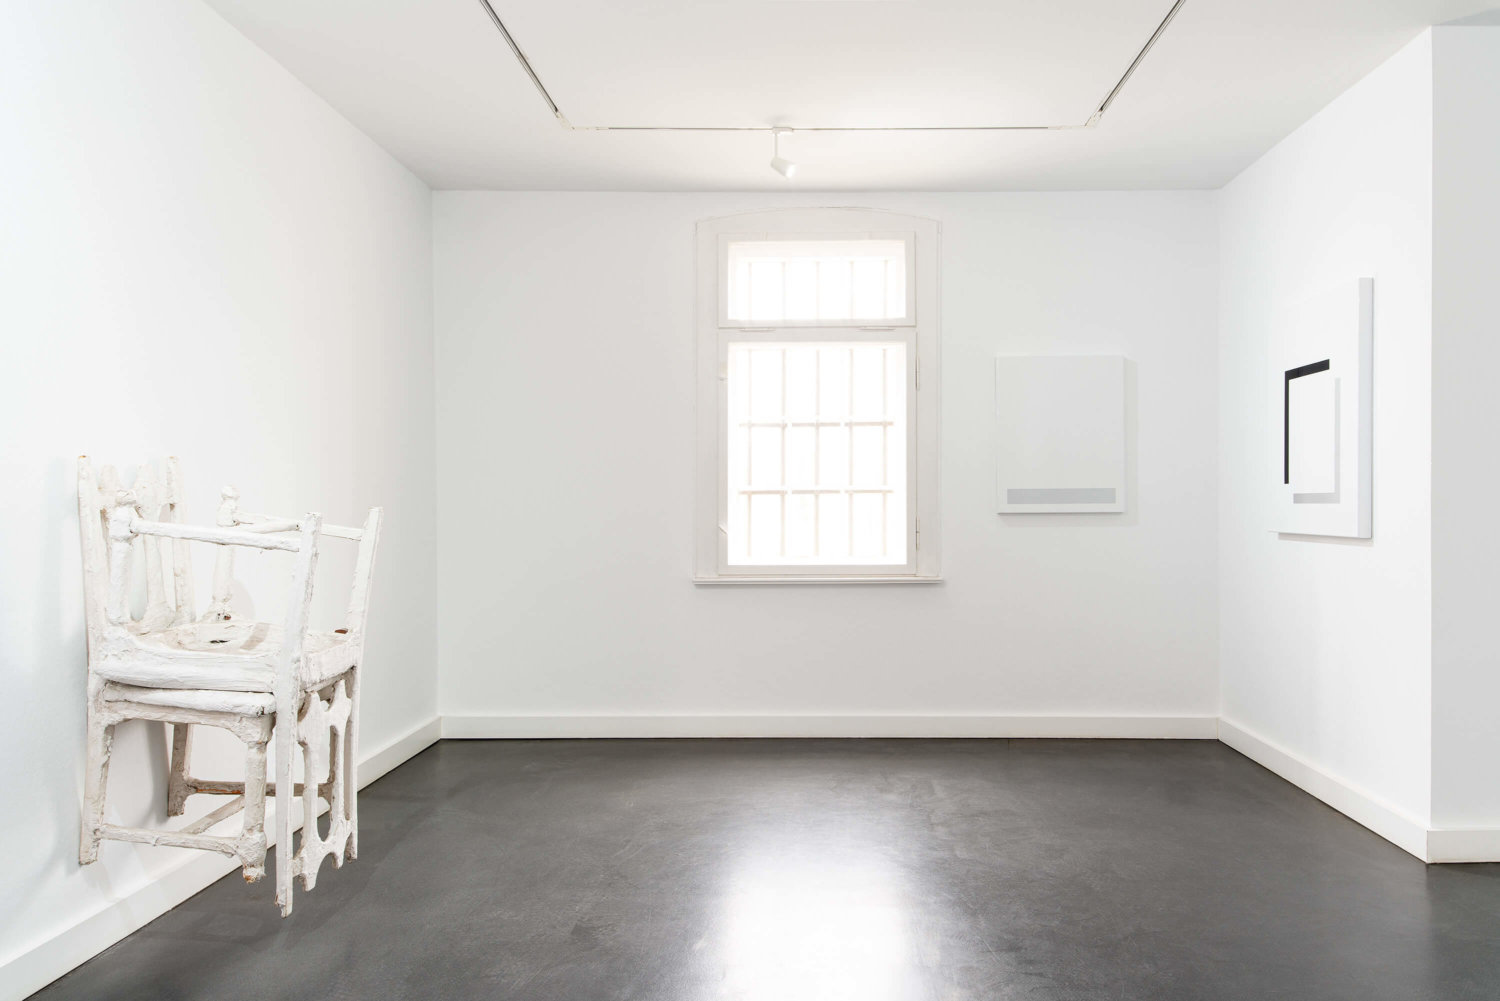 Ein weißer Ausstellungsraum, links ein Objekt aus zwei weißen Stühlen an der Wand, rechts in der Ecke zwei weitere Kunstwerke